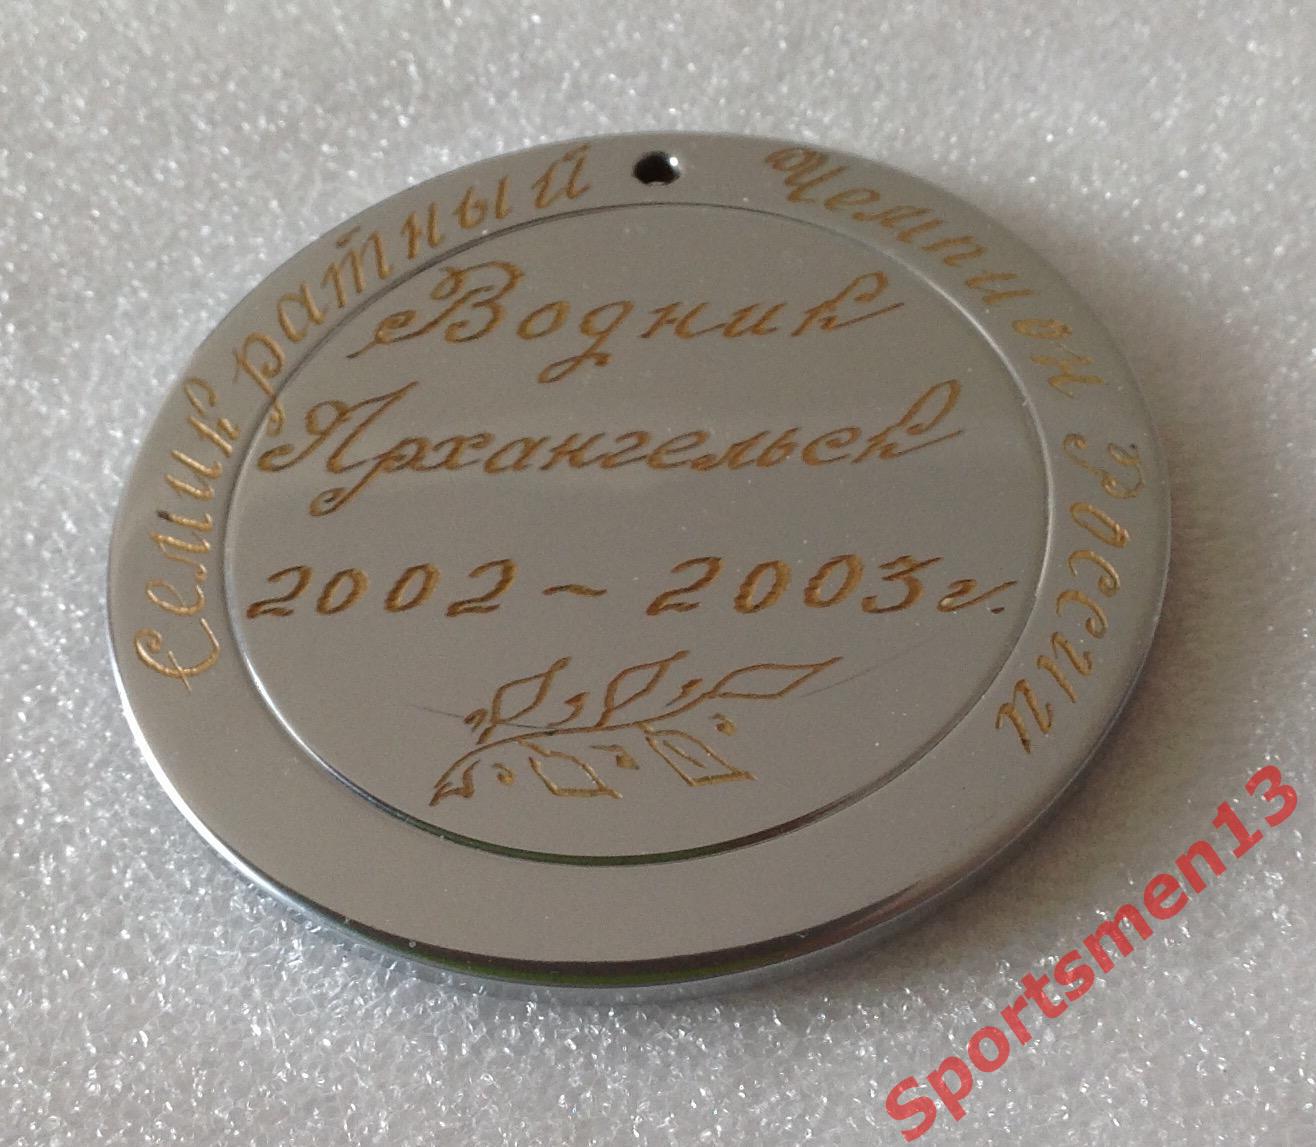 Хоккей с мячом. Медаль памятная. Водник Архангельск, 2003